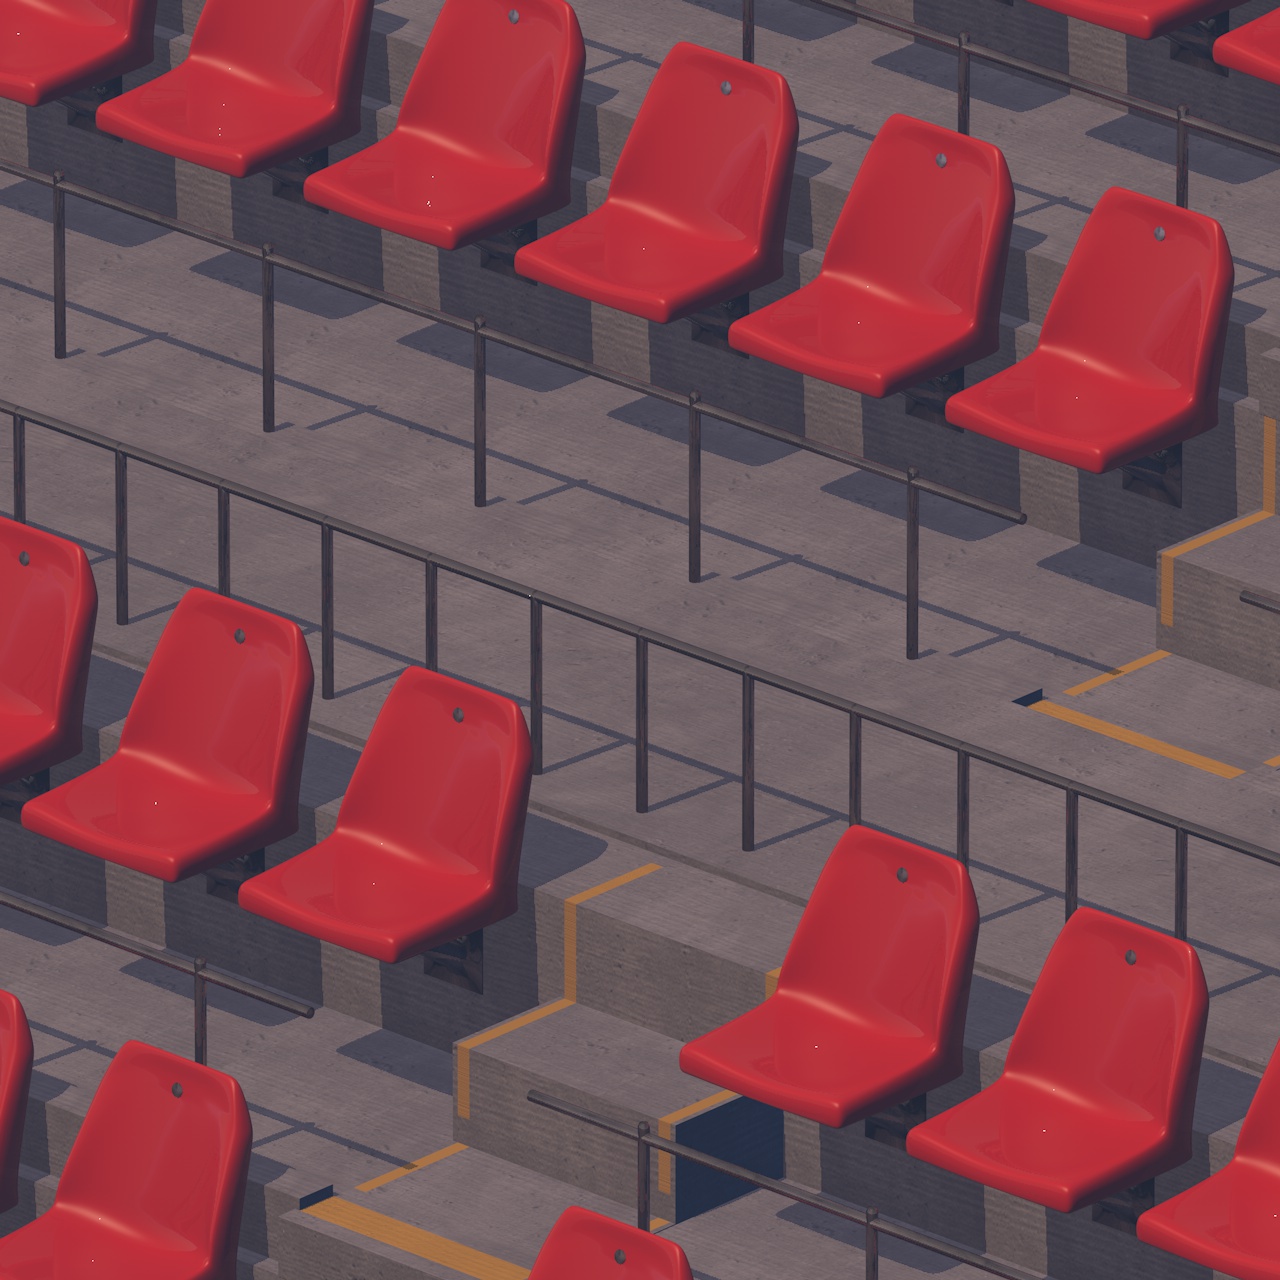 Assentos do estádio arquibancadas do auditório do estádio do modelo 3d